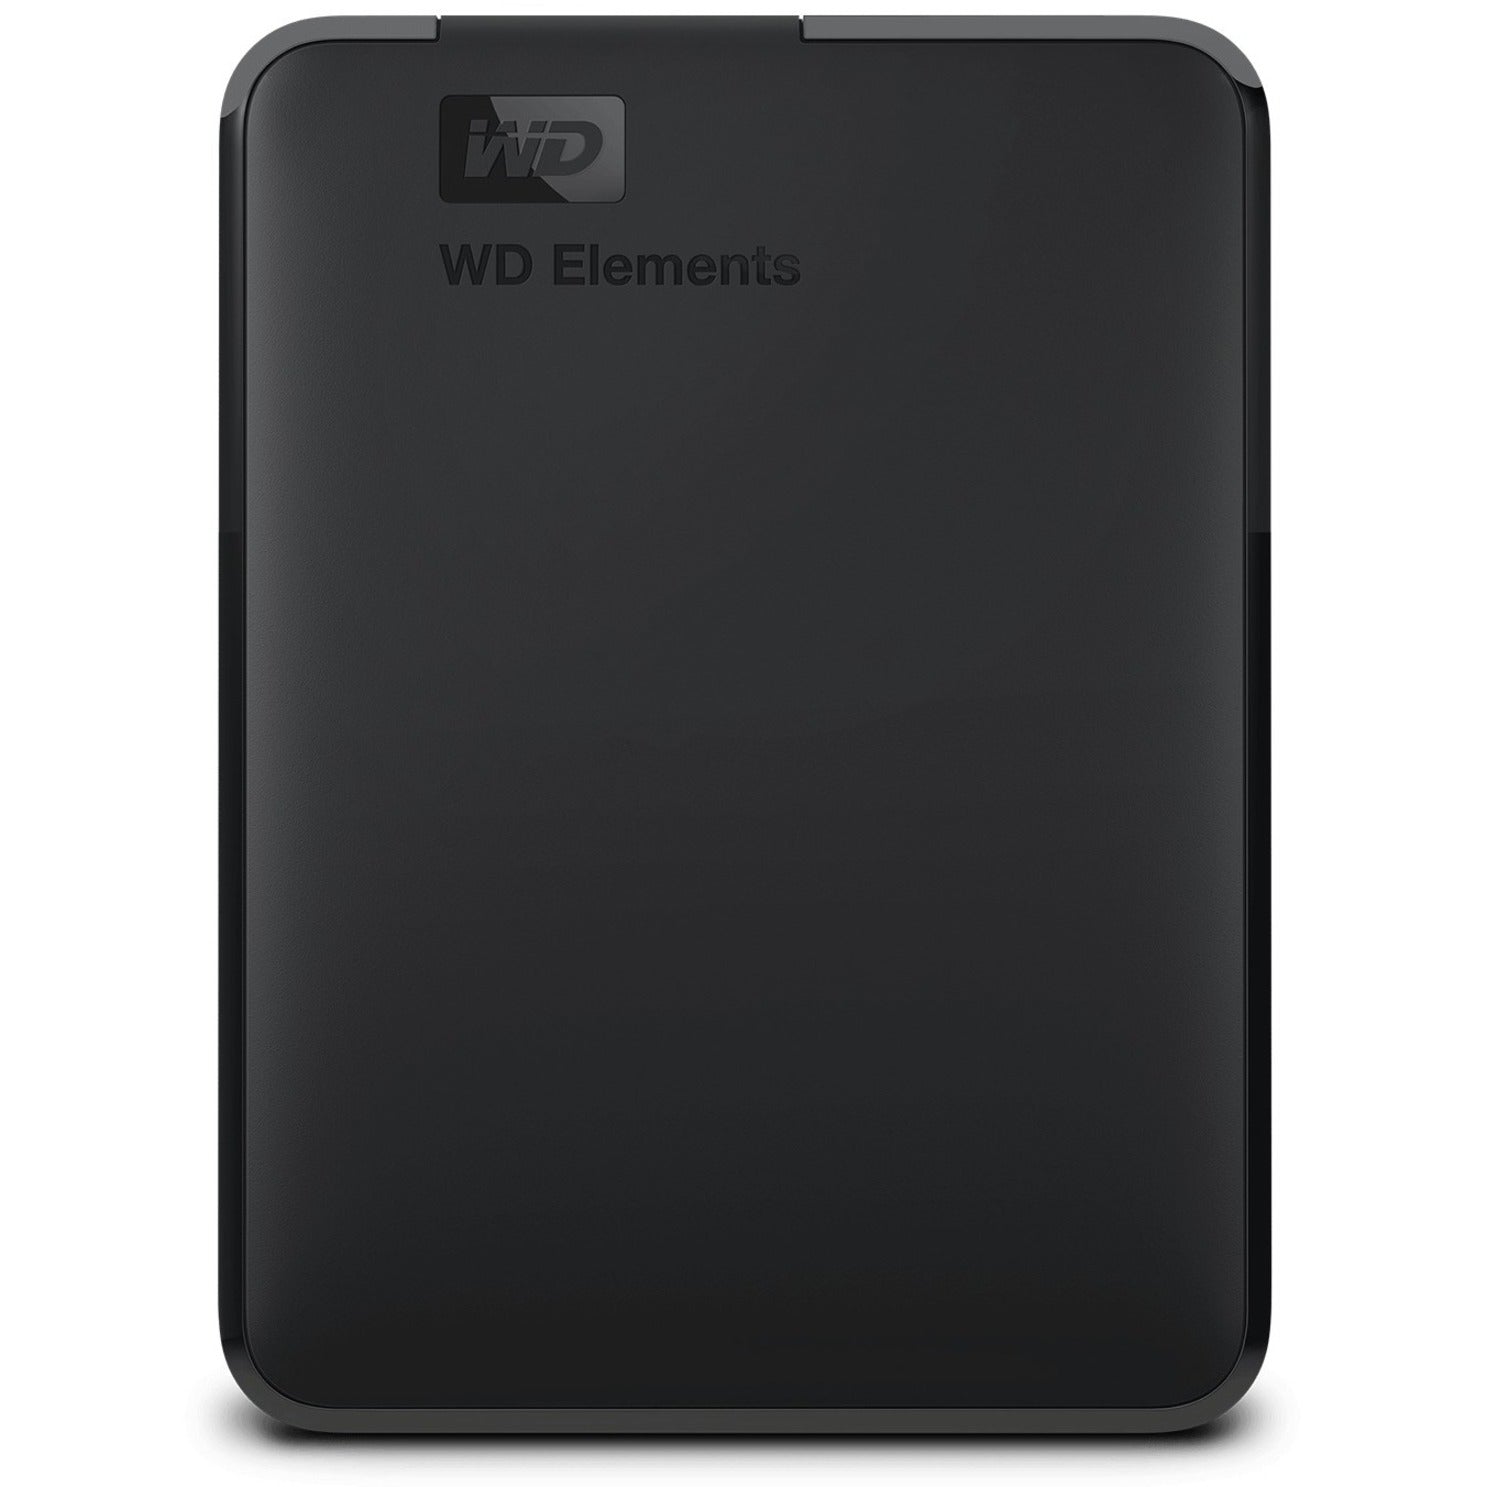 WD WDBWLG0200HBK-NESN Elements Desktop Hard Drive, 20TB Storage